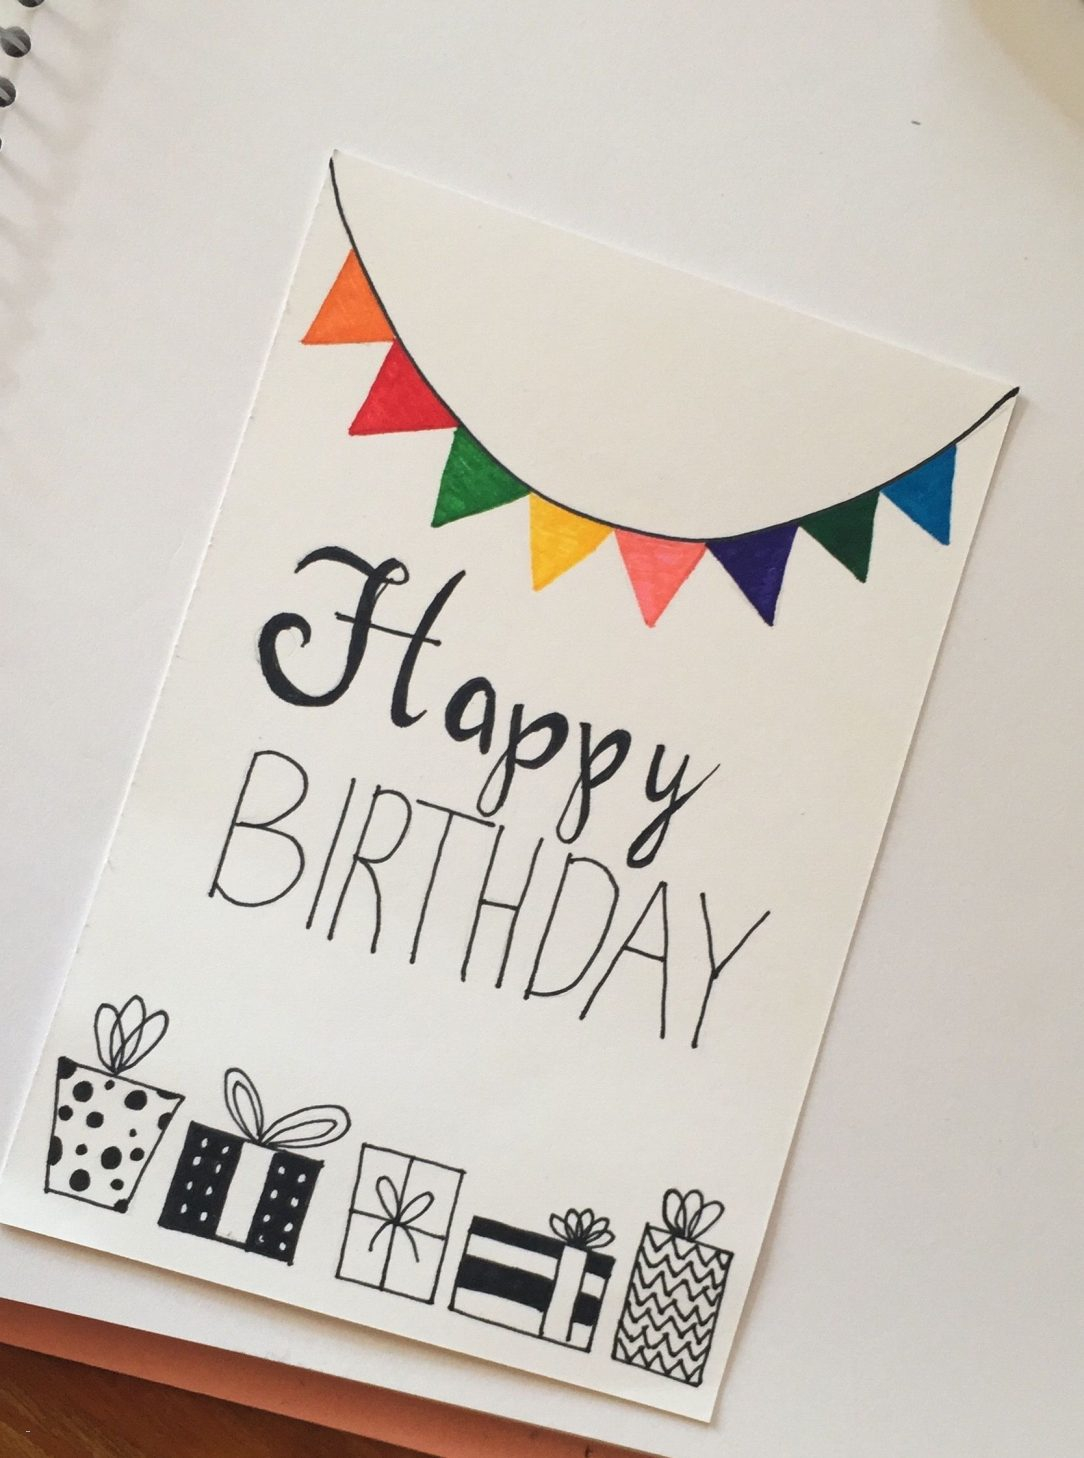 Creative Birthday Card Ideas For Mom Cute Homemade Birthday Cards For Mom Simple Handmade Envelopes